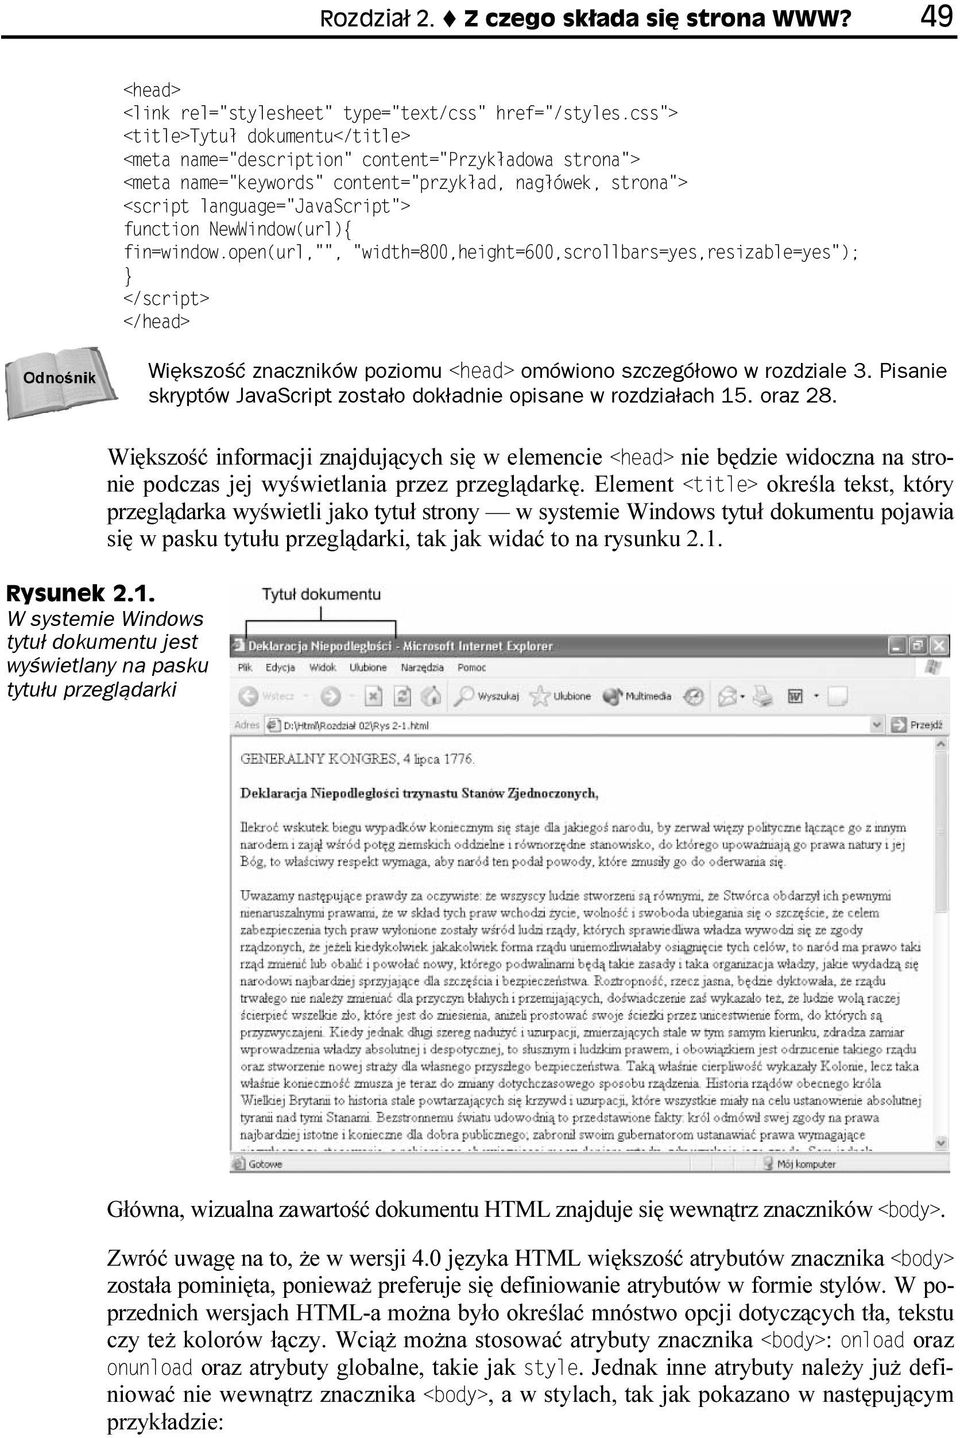 Element określa tekst, który przeglądarka wyświetli jako tytuł strony w systemie Windows tytuł dokumentu pojawia się w pasku tytułu przeglądarki, tak jak widać to na rysunku 2.1.